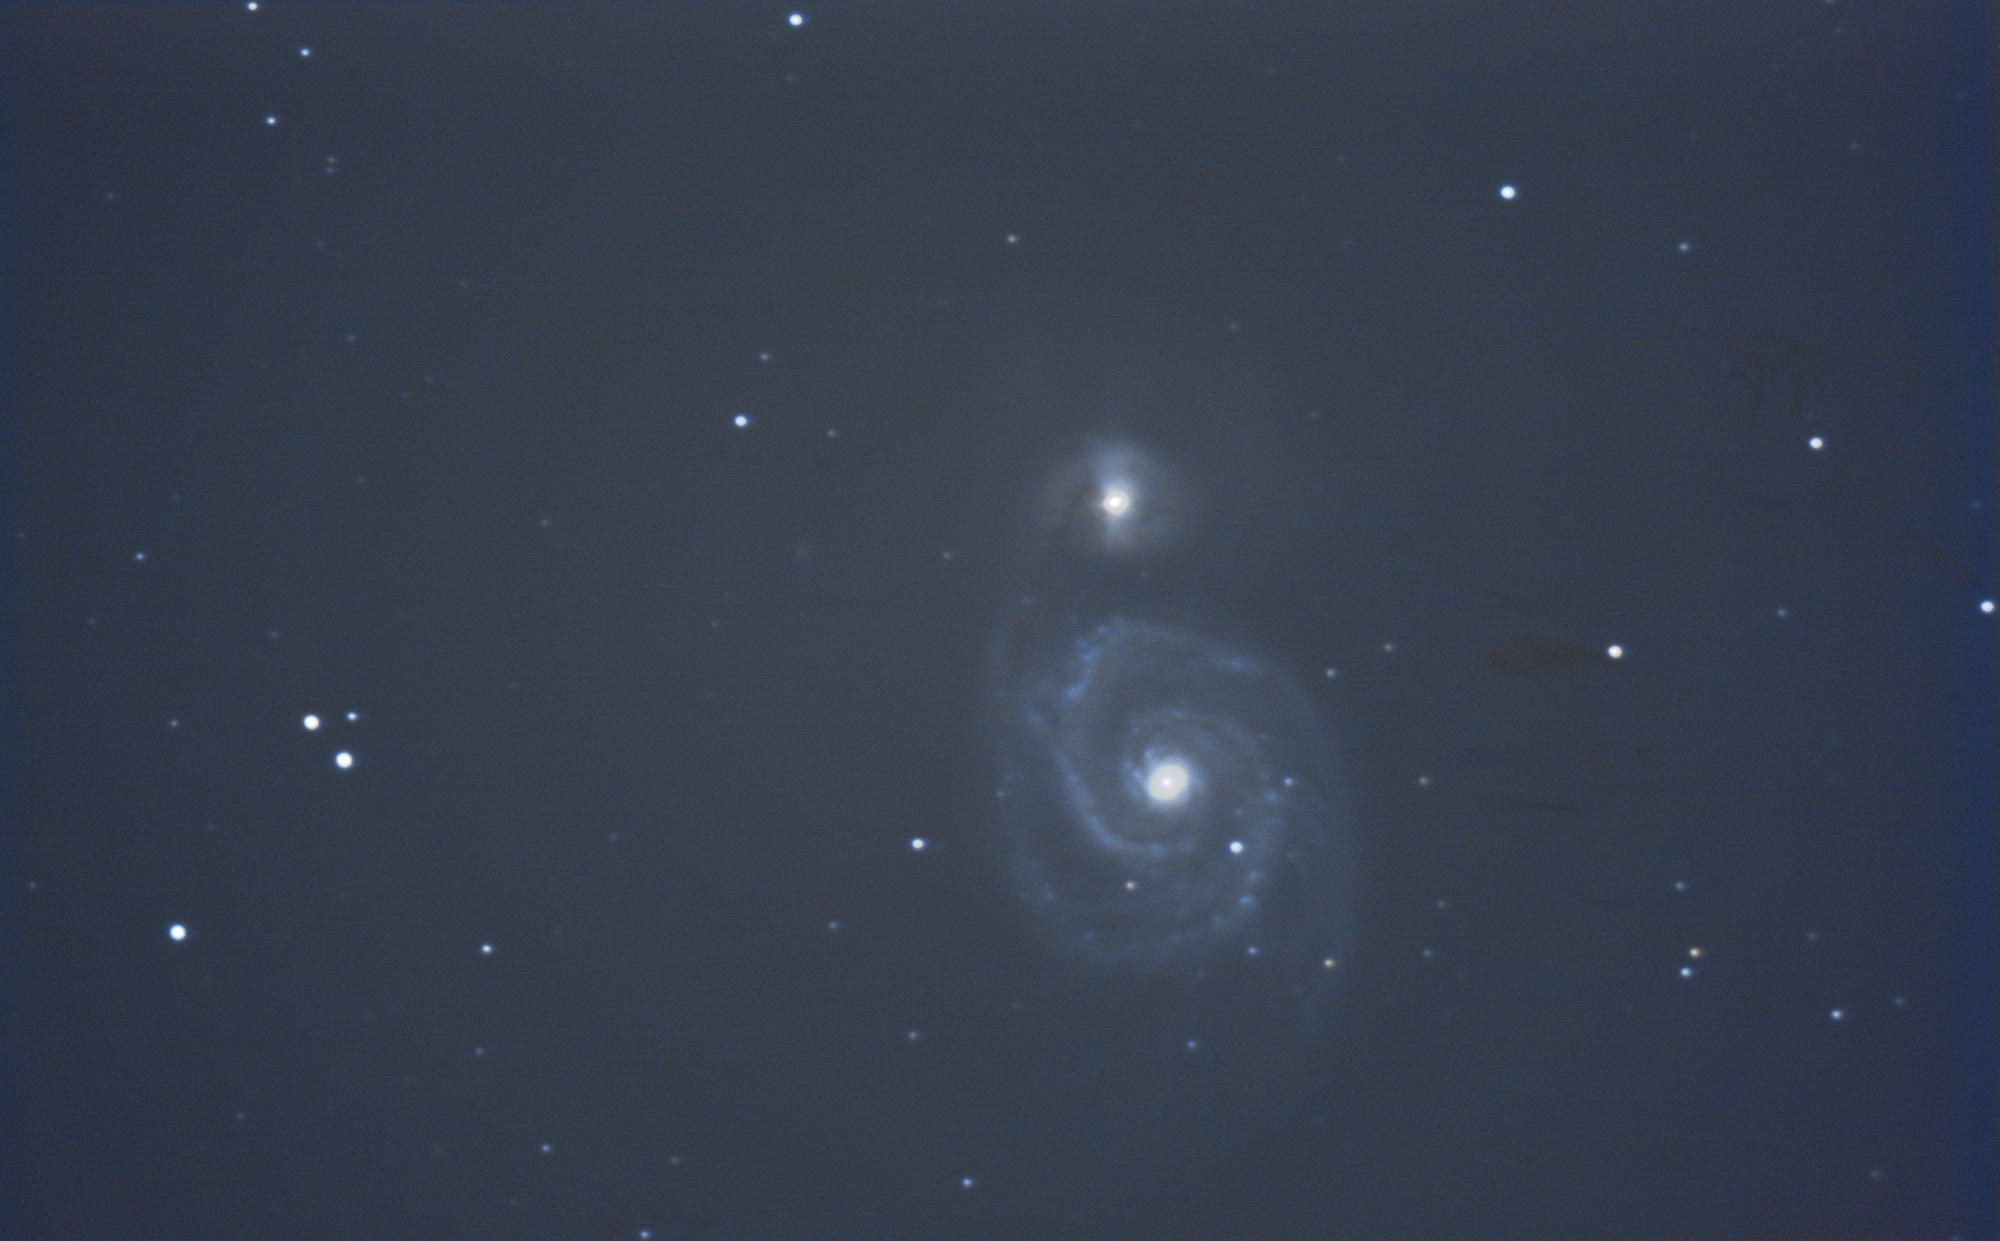 Galaxie M51